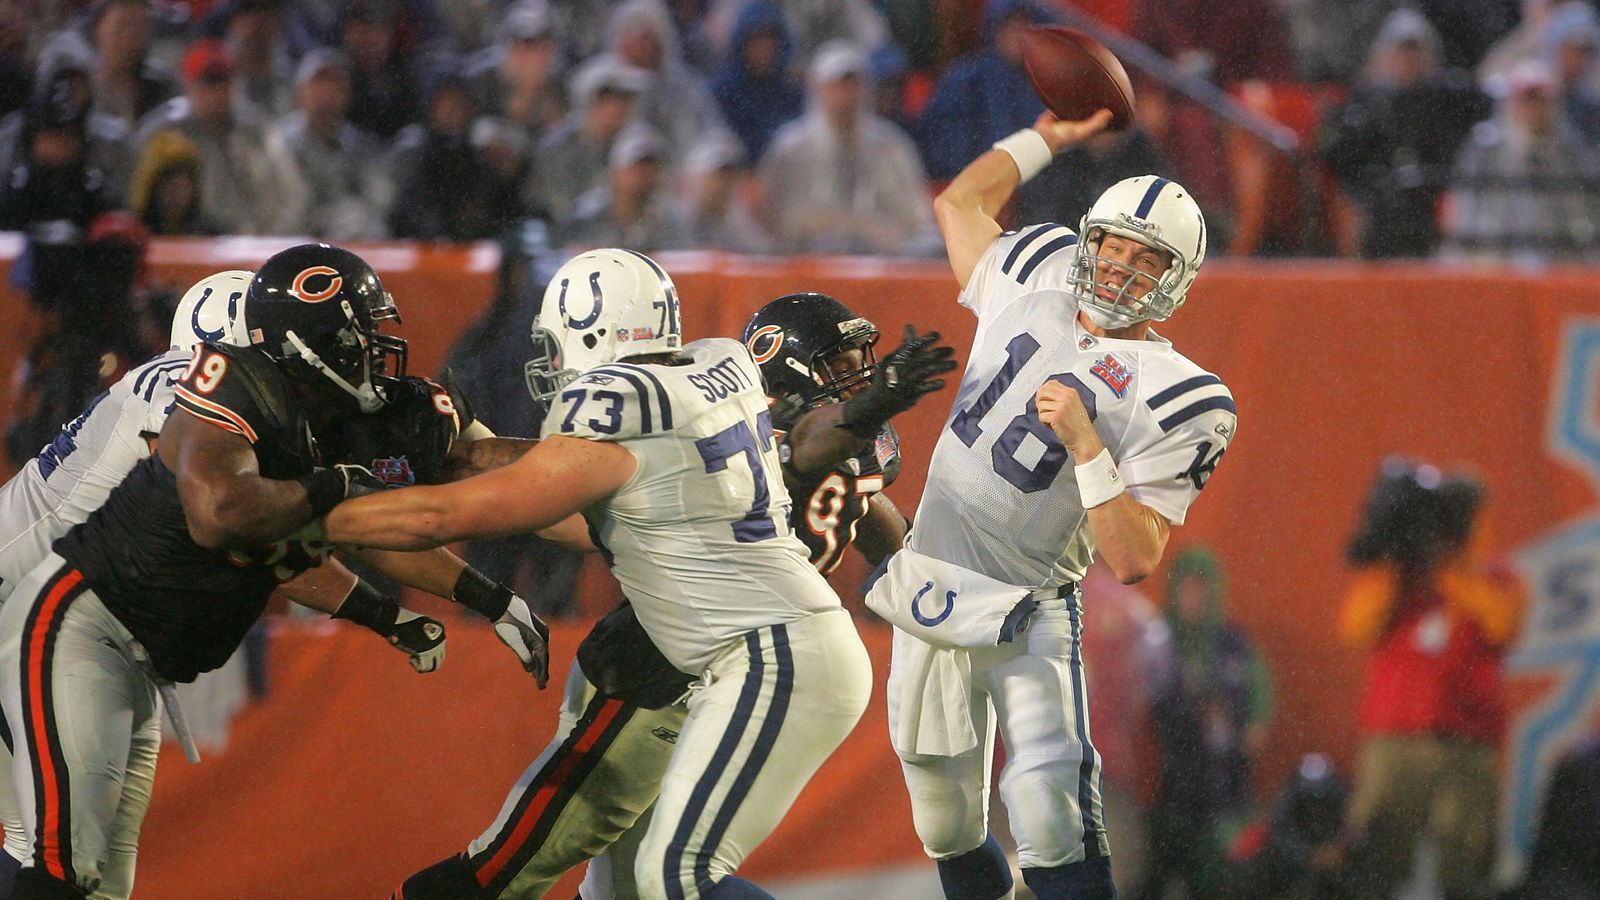 
                <strong>2007 - Super Bowl XLI - Indianapolis Colts</strong><br>
                Der 41. Austragung des Super Bowls drückte Peyton Manning seinen Stempel auf. Der Quarterback führte die Indianapolis Colts mit einer überragenden Leistung zum 29:17-Sieg über die Chicago Bears. Es war der erste Triumph im Super Bowl für Manning.
              